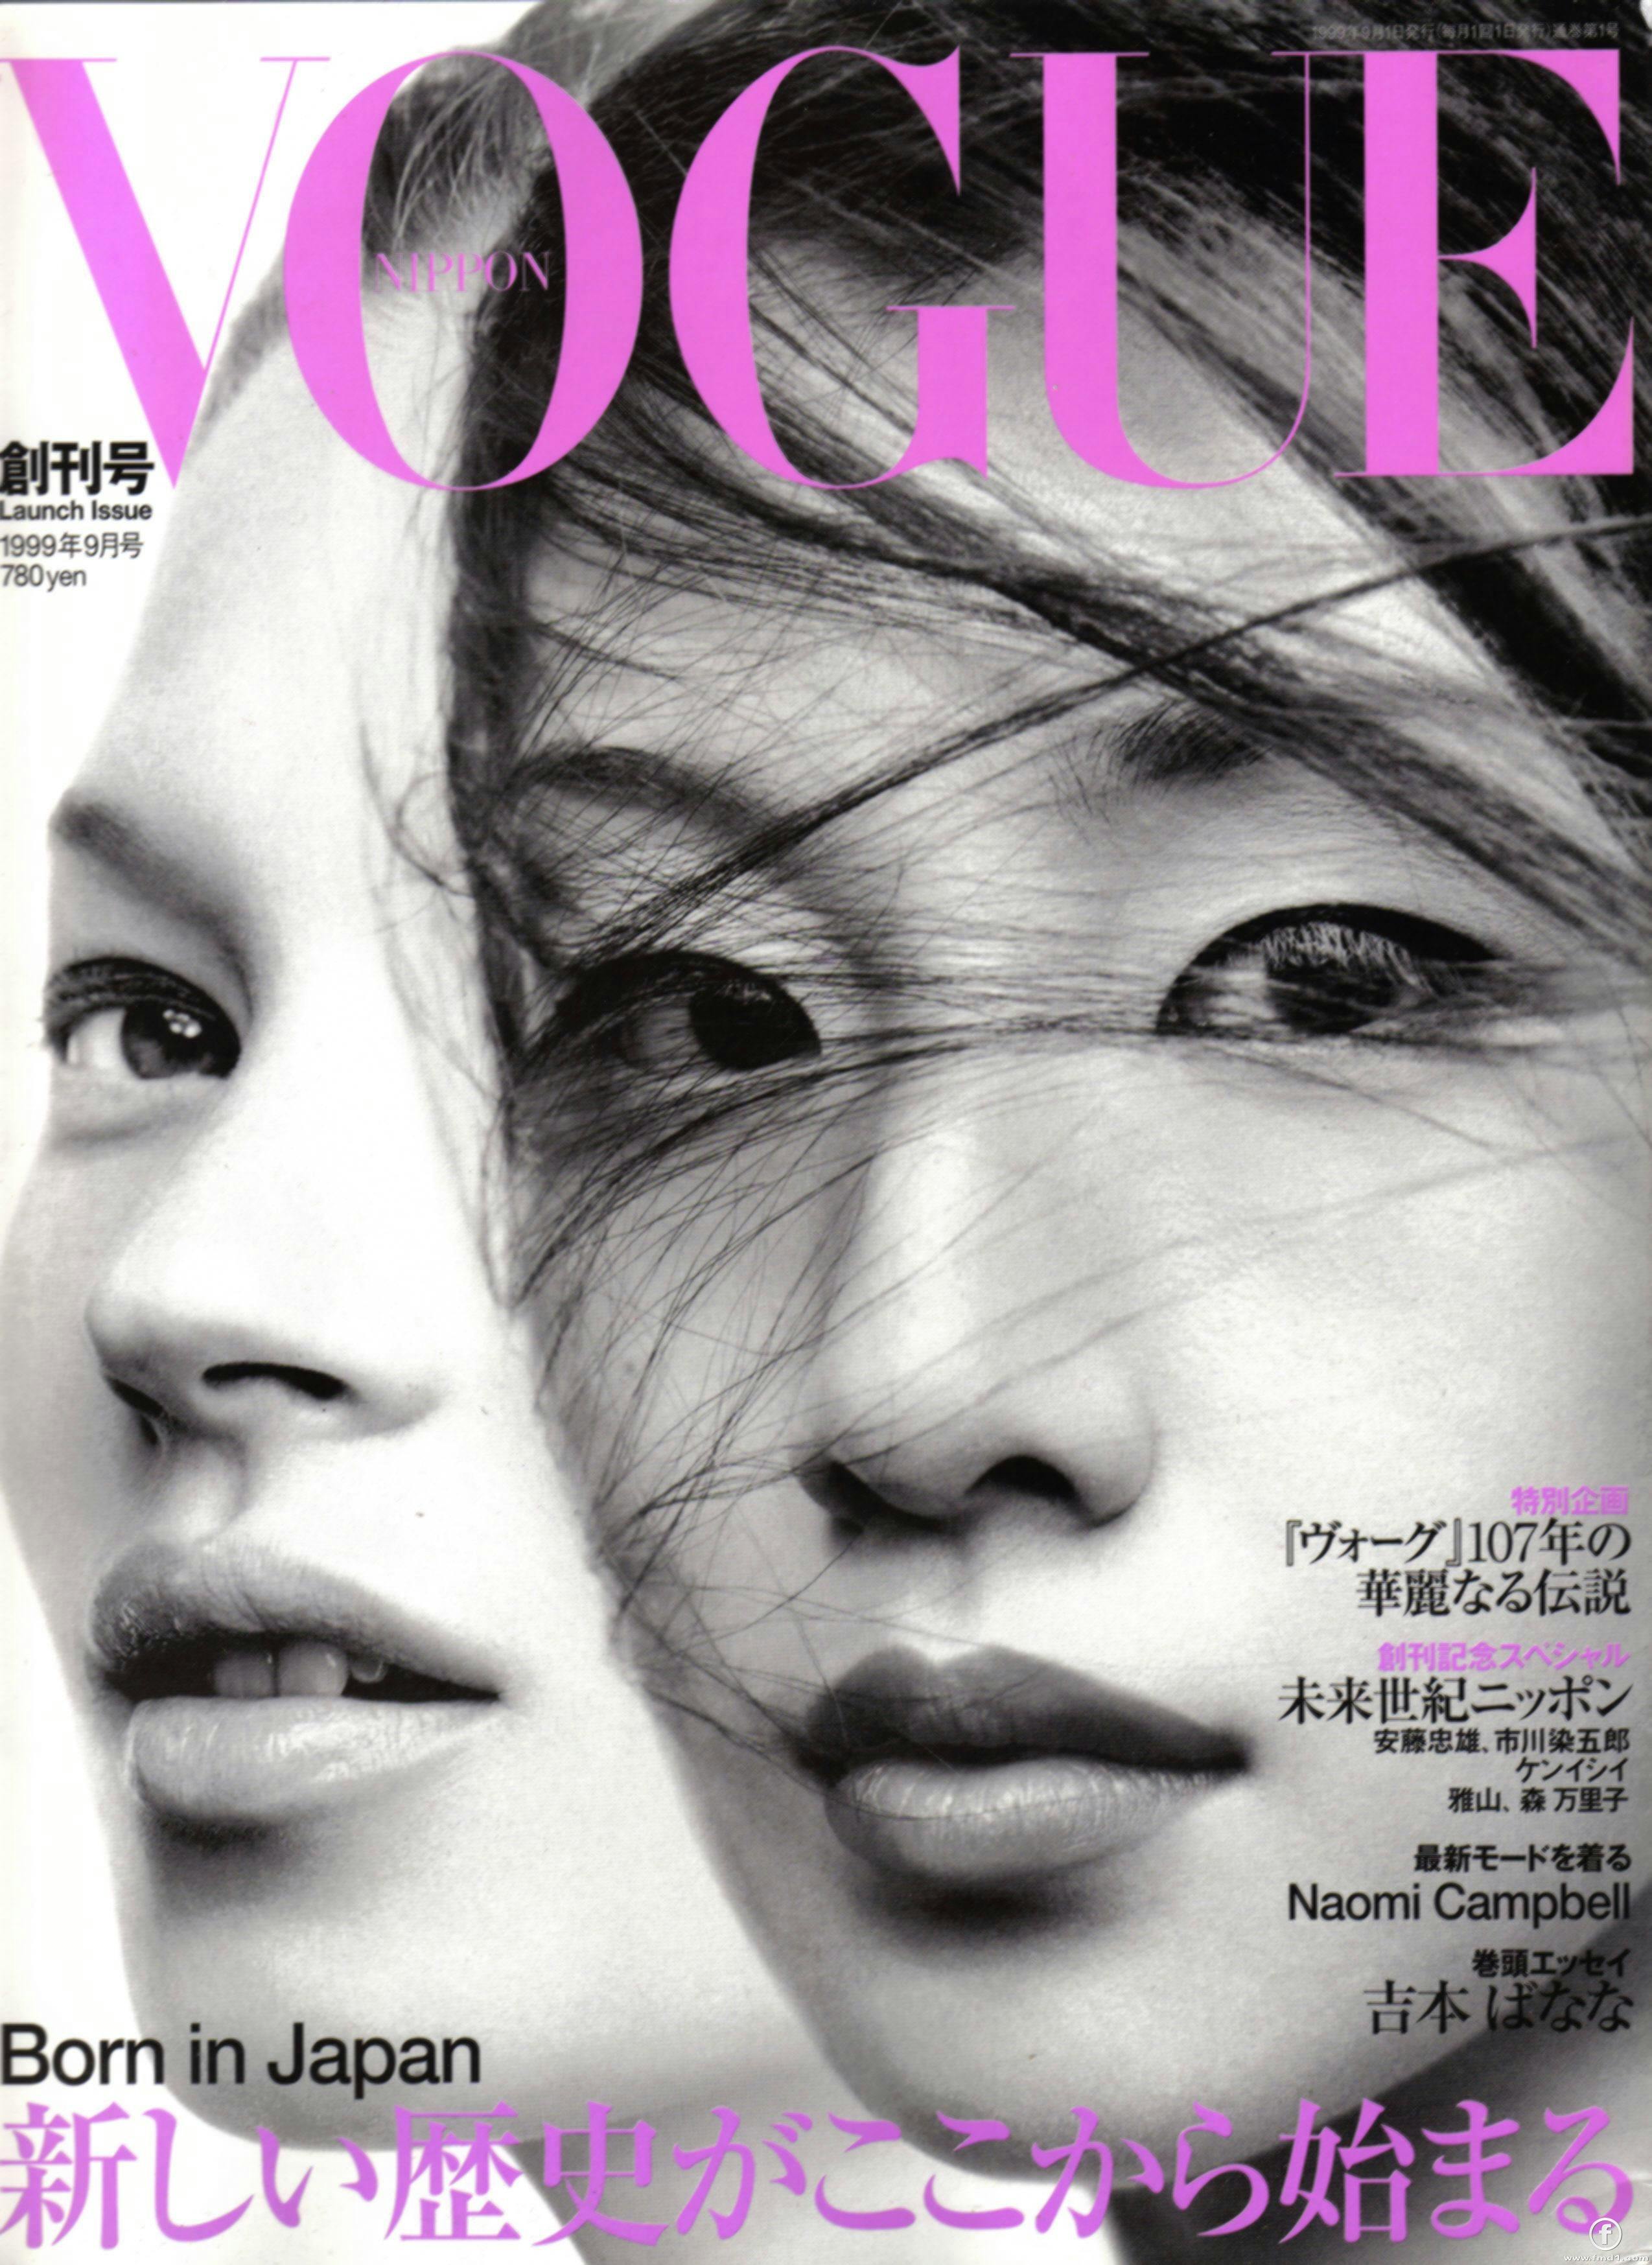 A Vogue magazine cover